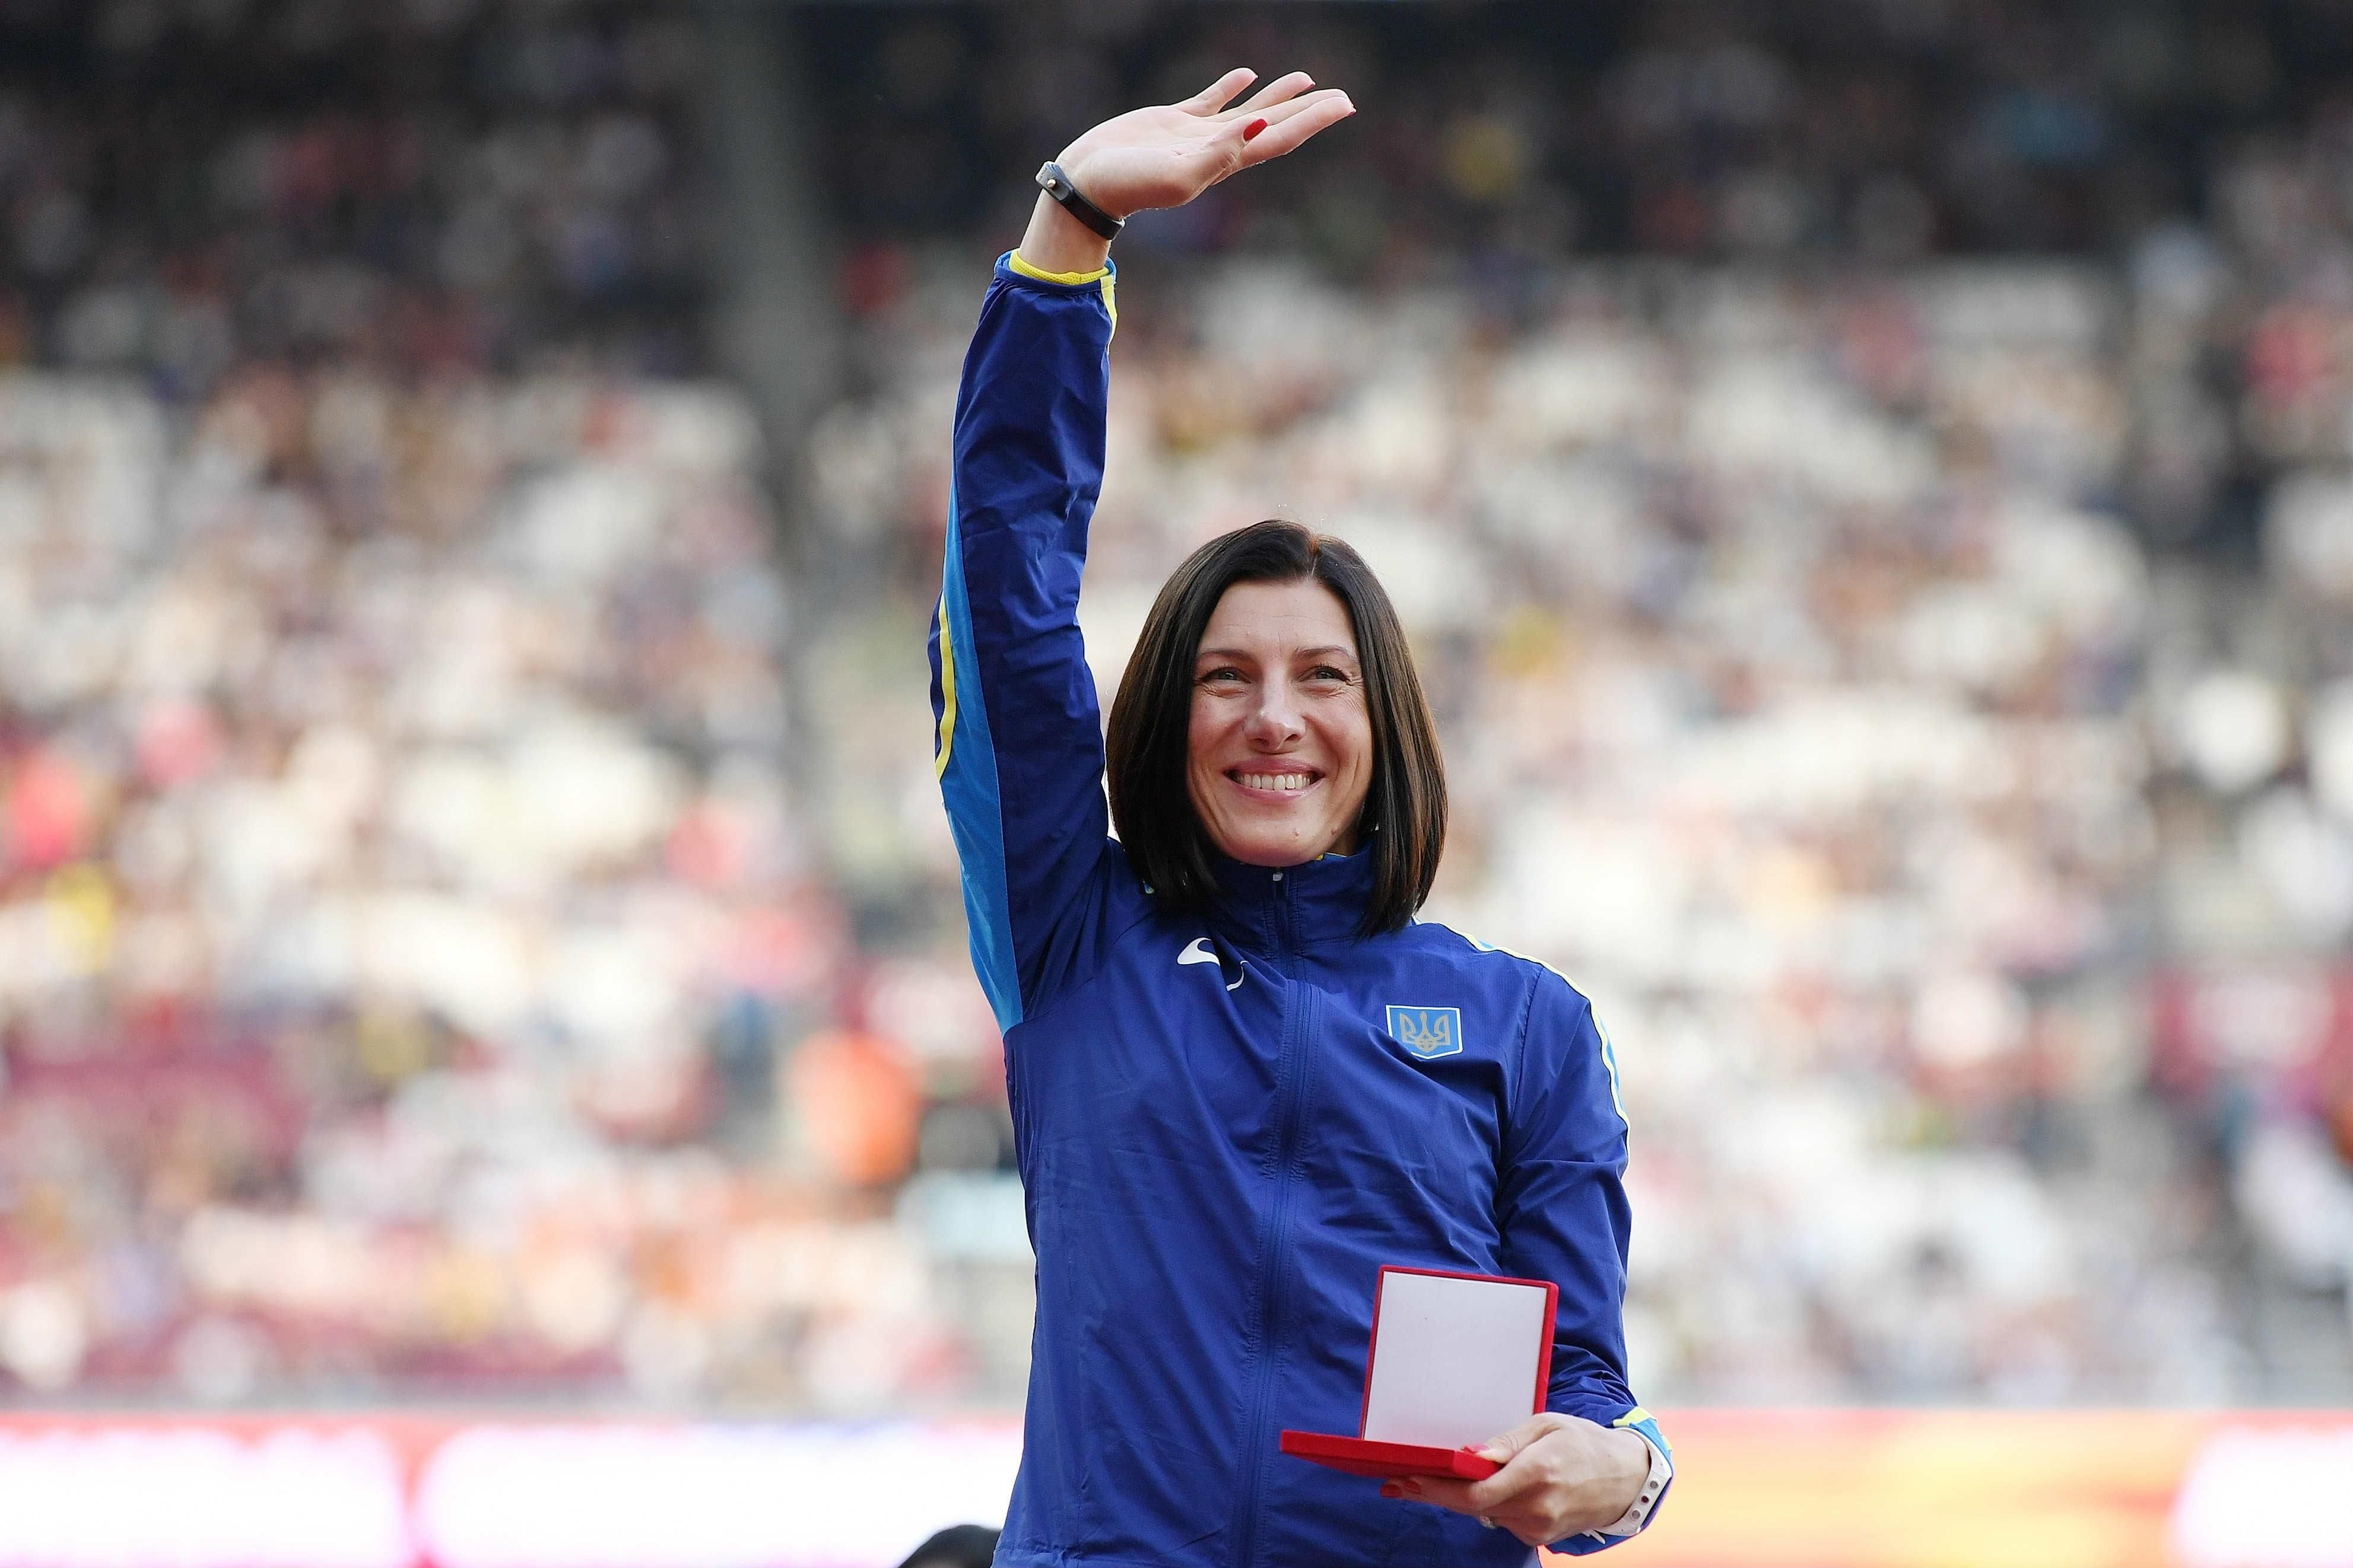 Плакала от счастья, – легендарная легкоатлетка трогательно поздравила с Днем защитников Украины